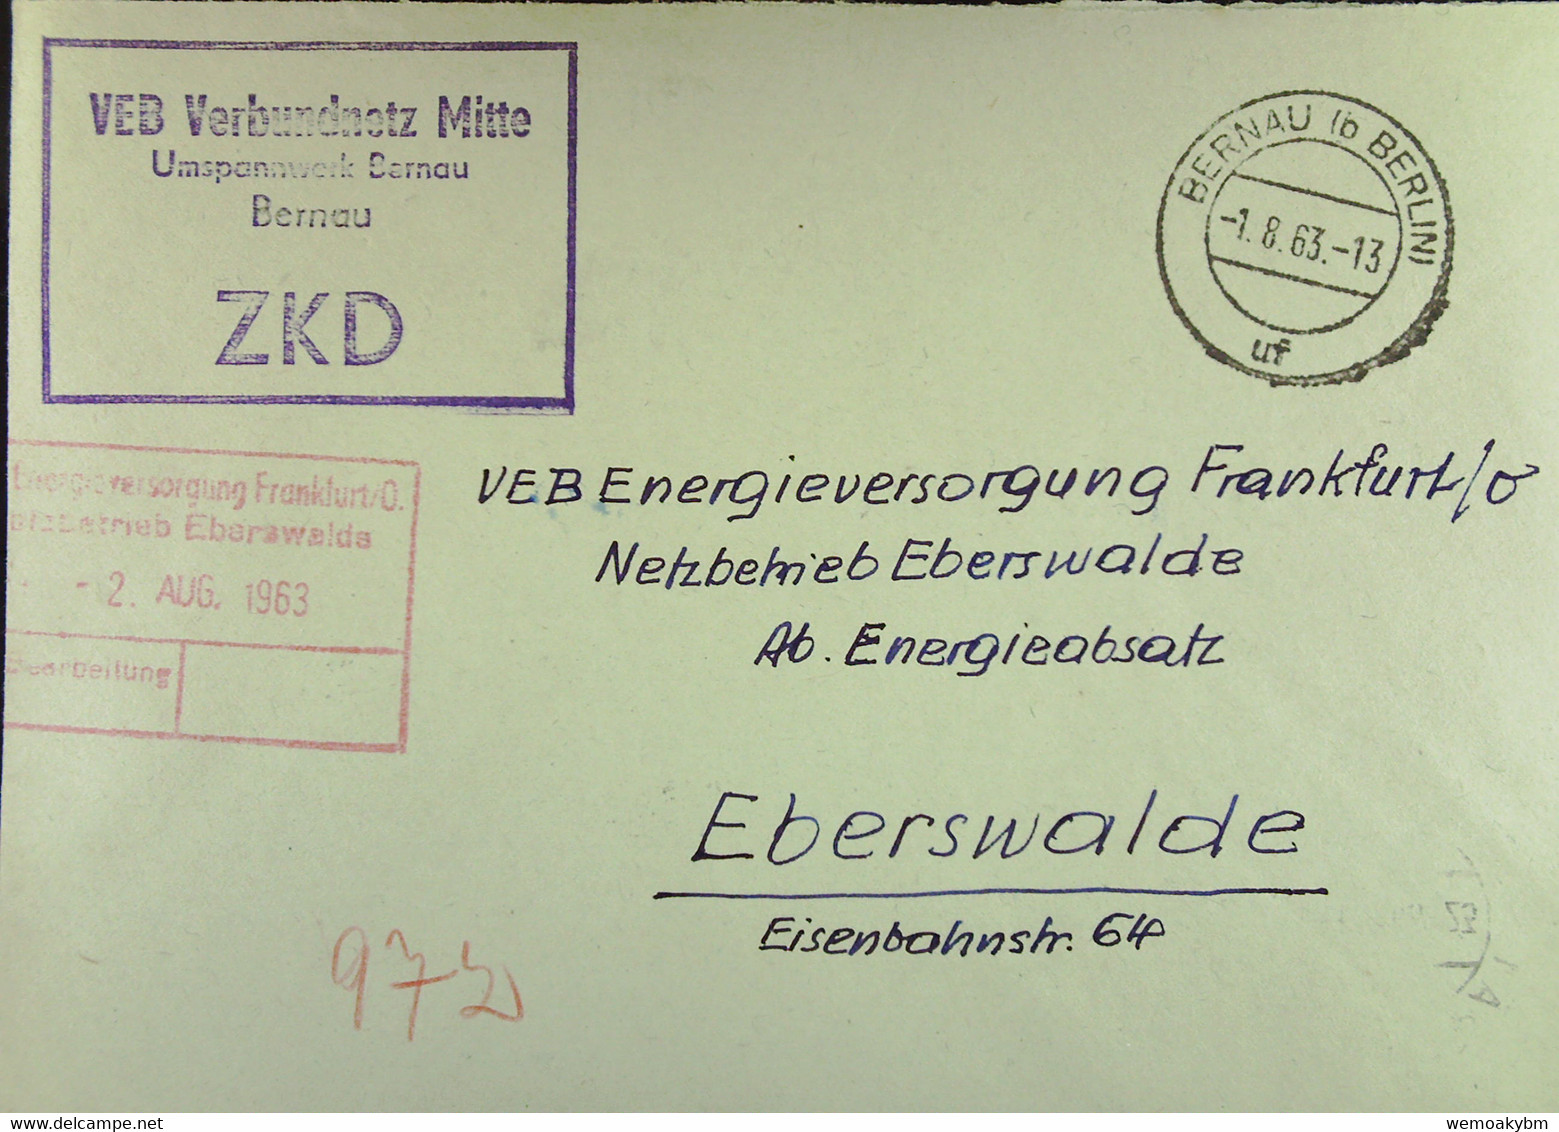 Fern-Brief Mit ZKD-Kastenst "VEB Verbundnetz Mitte Umspannwerk Bernau" 1.8.63 An VEB EV Eberswalde Mit Rotem Eing-St - Cartas & Documentos